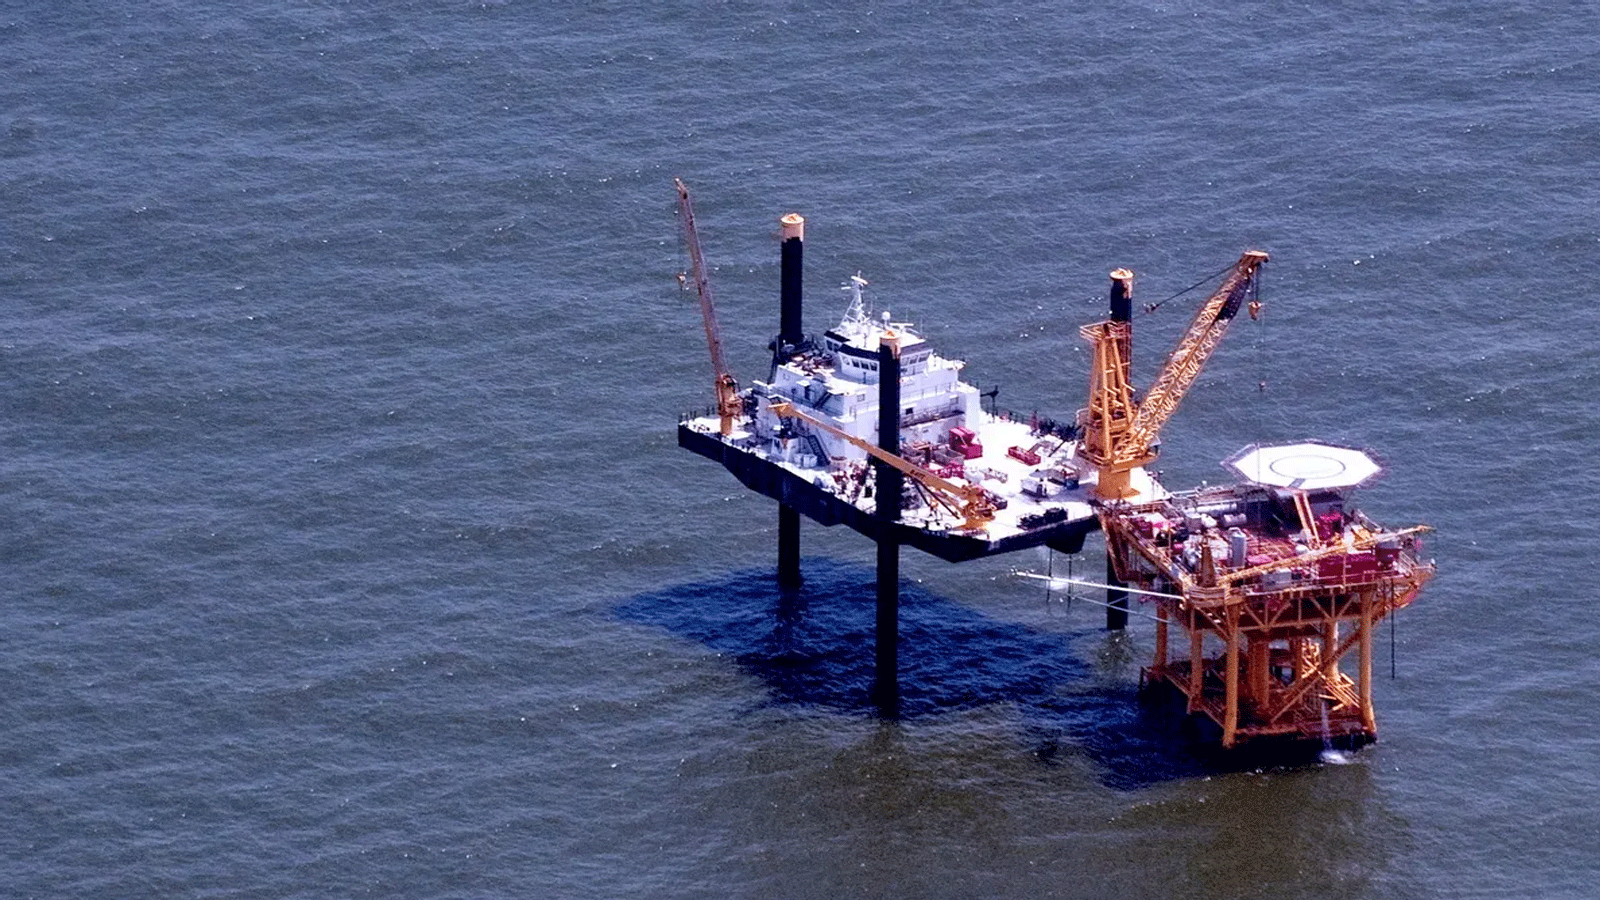  منصة نفطية بحرية في خليج المكسيك بالقرب من غراند آيل، لويزيانا، 12 حزيران/ يونيو 2010 تستمر بالتنظيف في بقعة نفطية BP Deepwater Horizon.